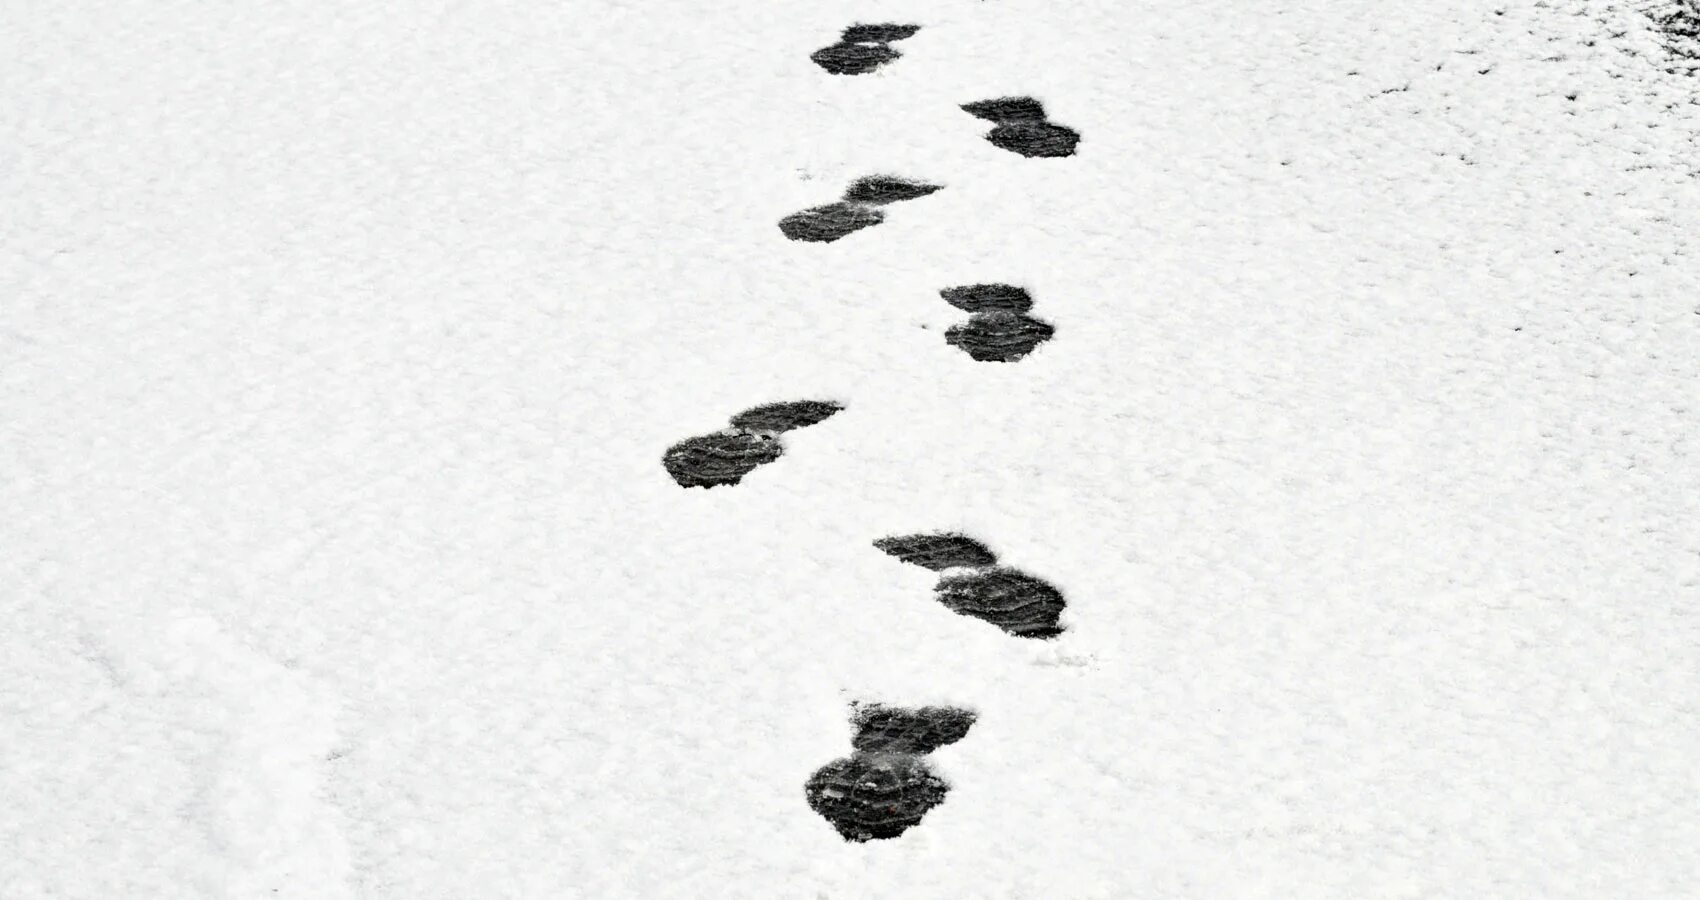 Там следы. Следы на снегу. Следы человека на снегу. Дорожка следов на снегу. Следы в сугробе.